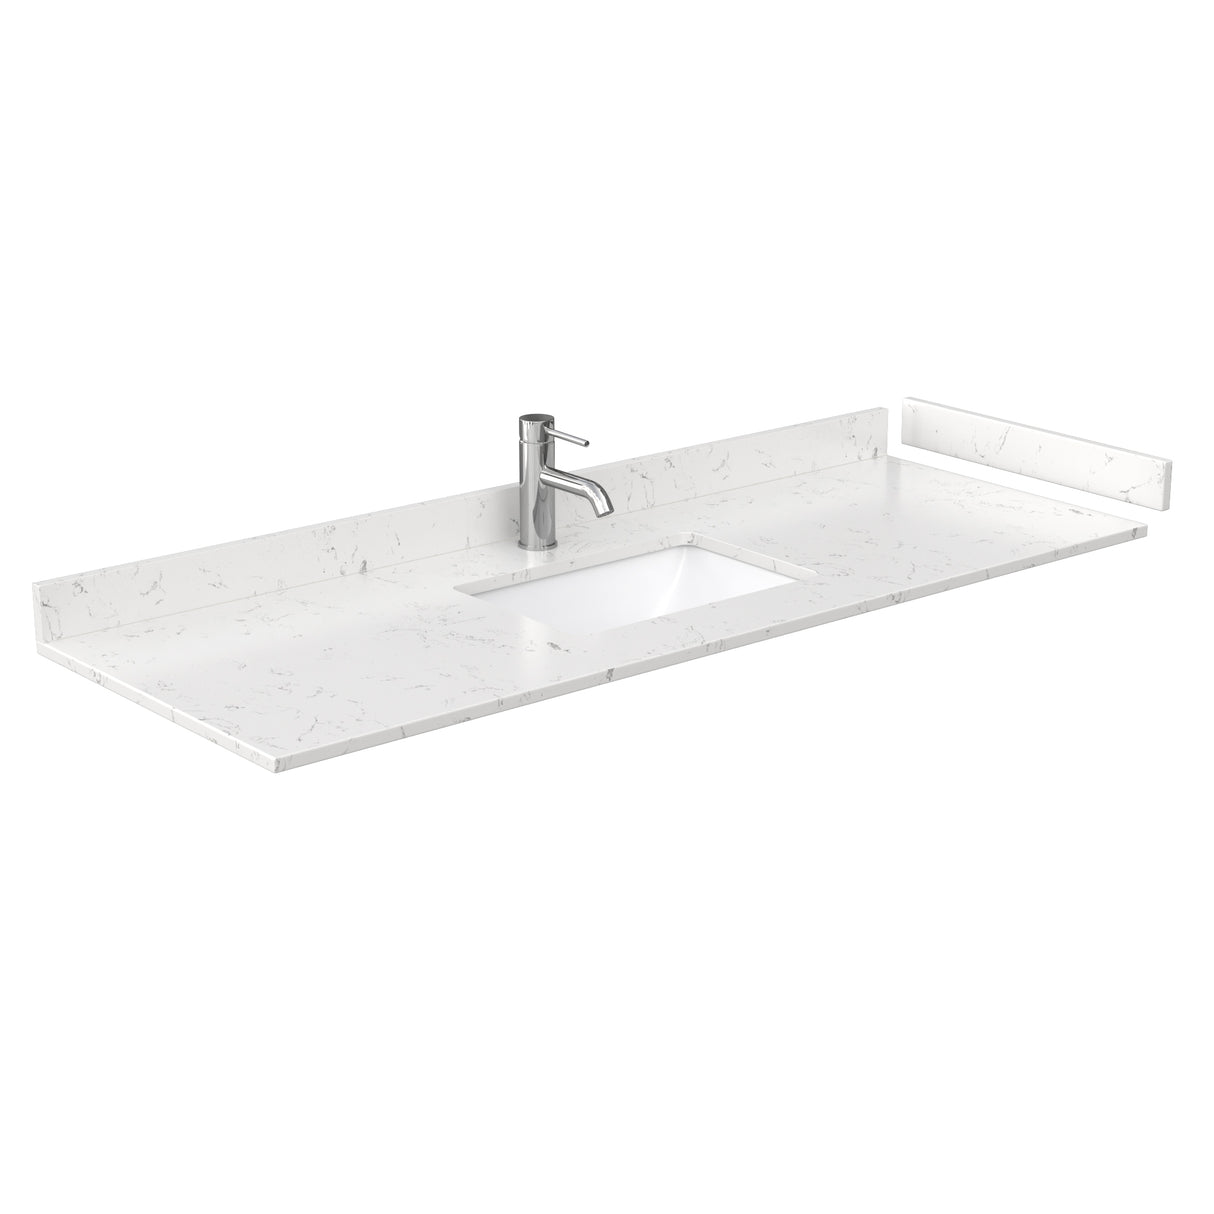 Deborah 60 Inch Single Bathroom Vanity in White Carrara Cultured Marble Countertop Undermount Square Sink Medicine Cabinet